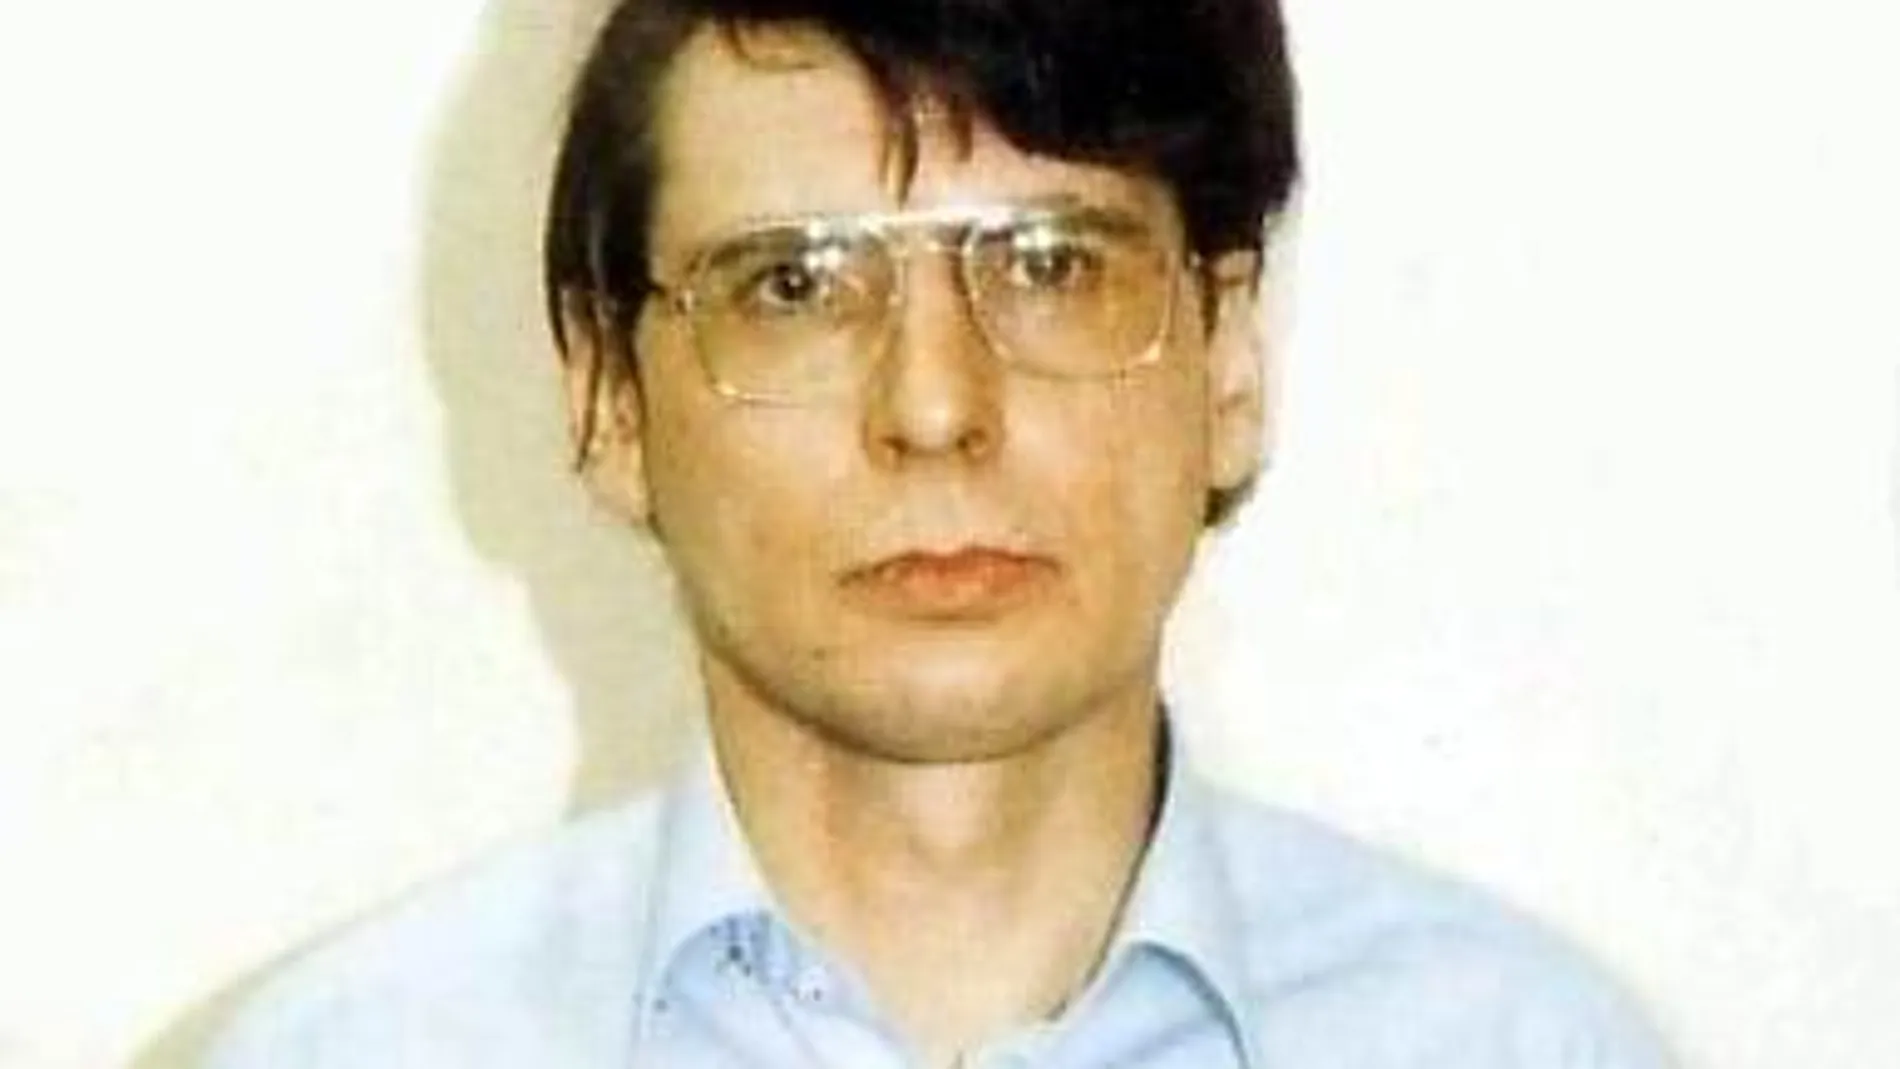 Dennise Nilsen mató a 15 hombres en su casa en la década de los 80